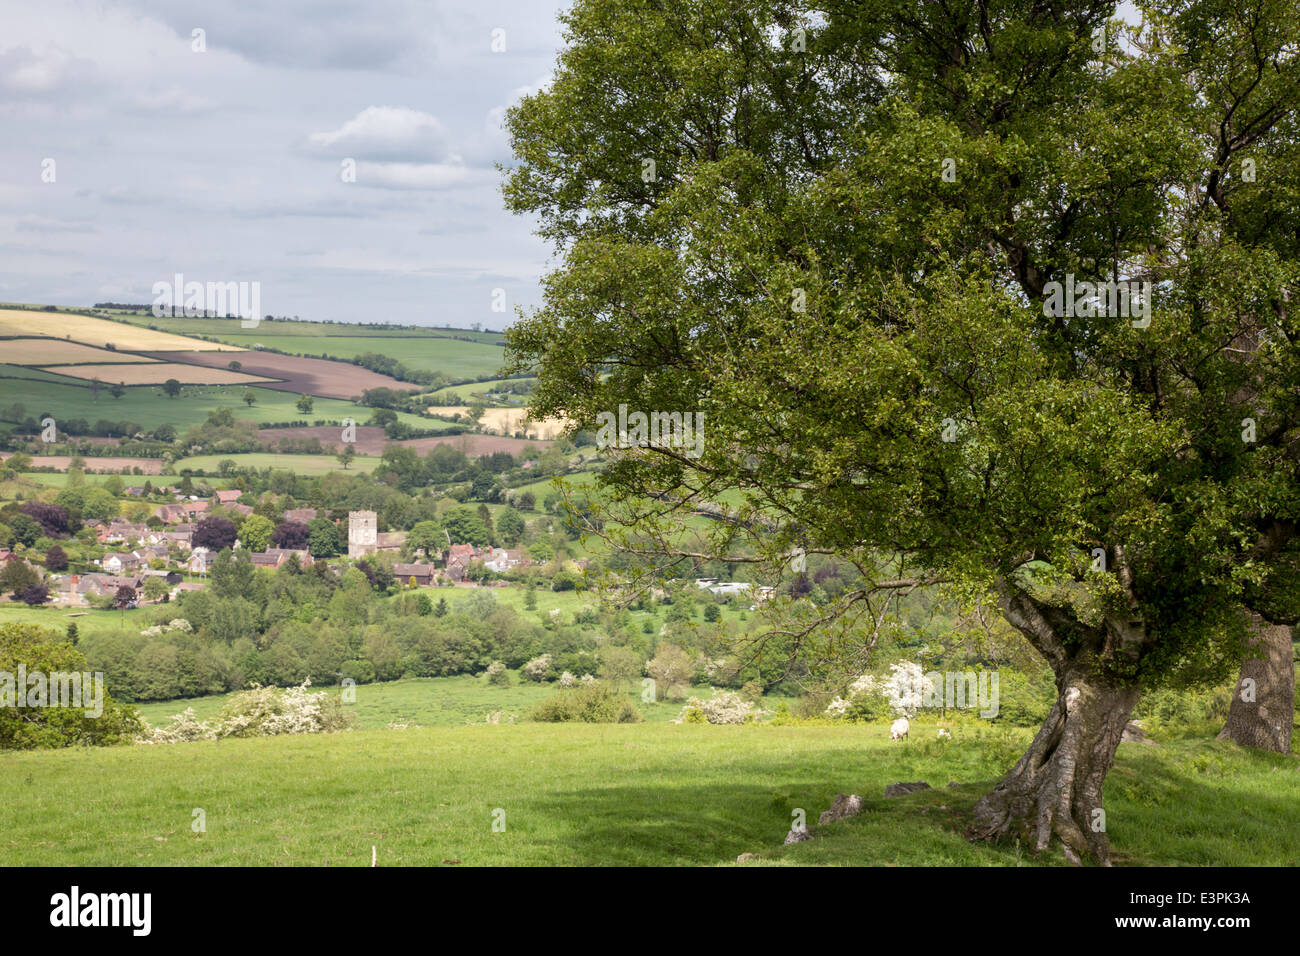 The Shropshire village of Cardington, Shropshire, England, UK Stock Photo